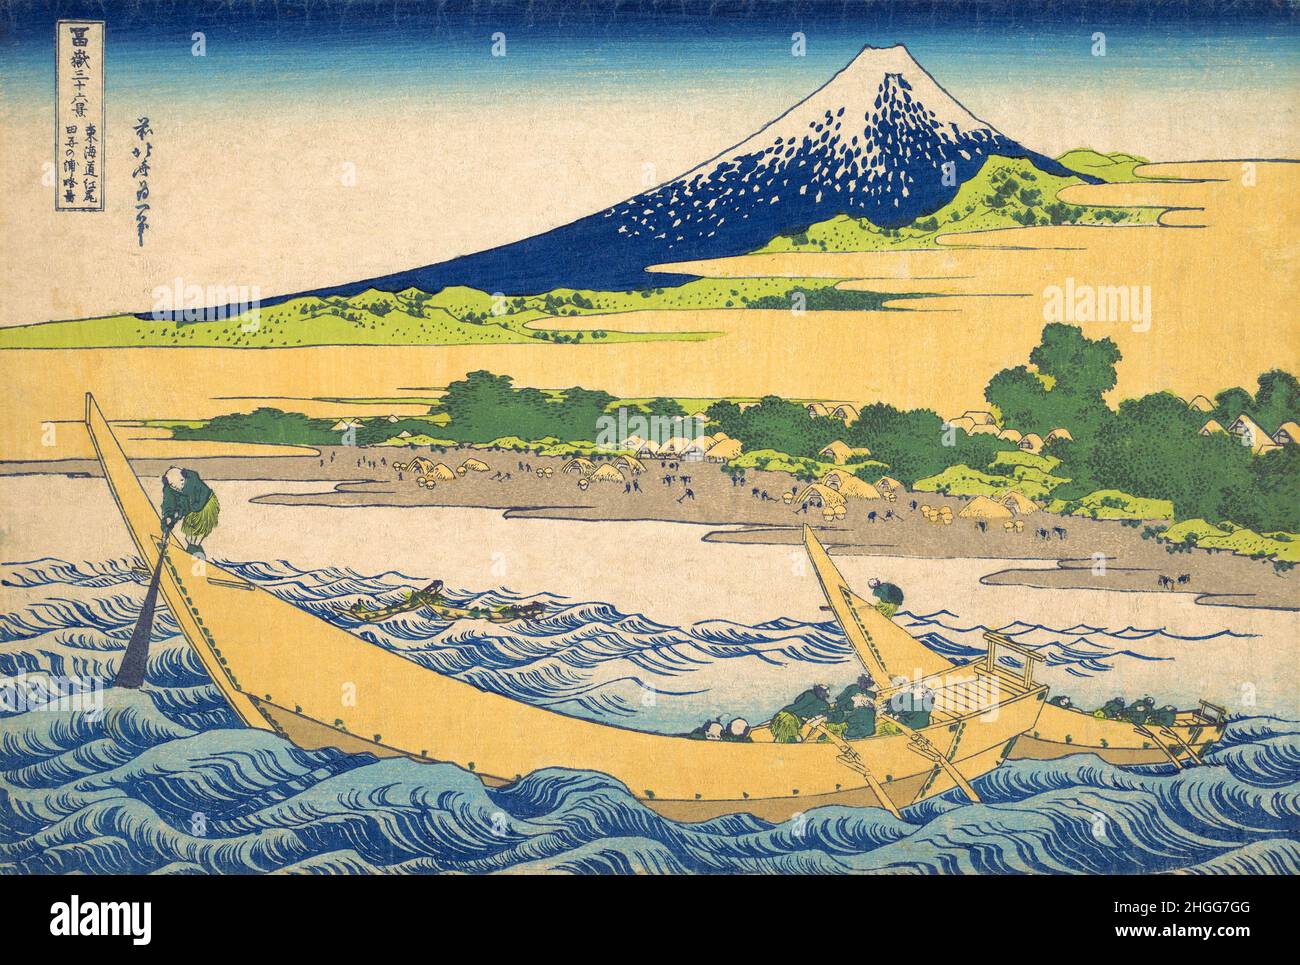 Japon: 'La baie de Tago près d'Ejiri sur le Tokaido'.Imprimé Ukiyo-e en blocs de bois de la série «trente-six vues du Mont Fuji» de Katsushika Hokusai (31 octobre 1760 - 10 mai 1849), 1830.«trente-six vues du Mont Fuji» est une série «ukiyo-e» de gravures sur bois de l’artiste japonais Katsushika Hokusai.La série représente le Mont Fuji dans différentes saisons et conditions météorologiques à partir de divers endroits et distances.Il se compose en fait de 46 tirages créés entre 1826 et 1833.Les 36 premiers ont été inclus dans la publication originale et, en raison de leur popularité, 10 autres ont été ajoutés. Banque D'Images